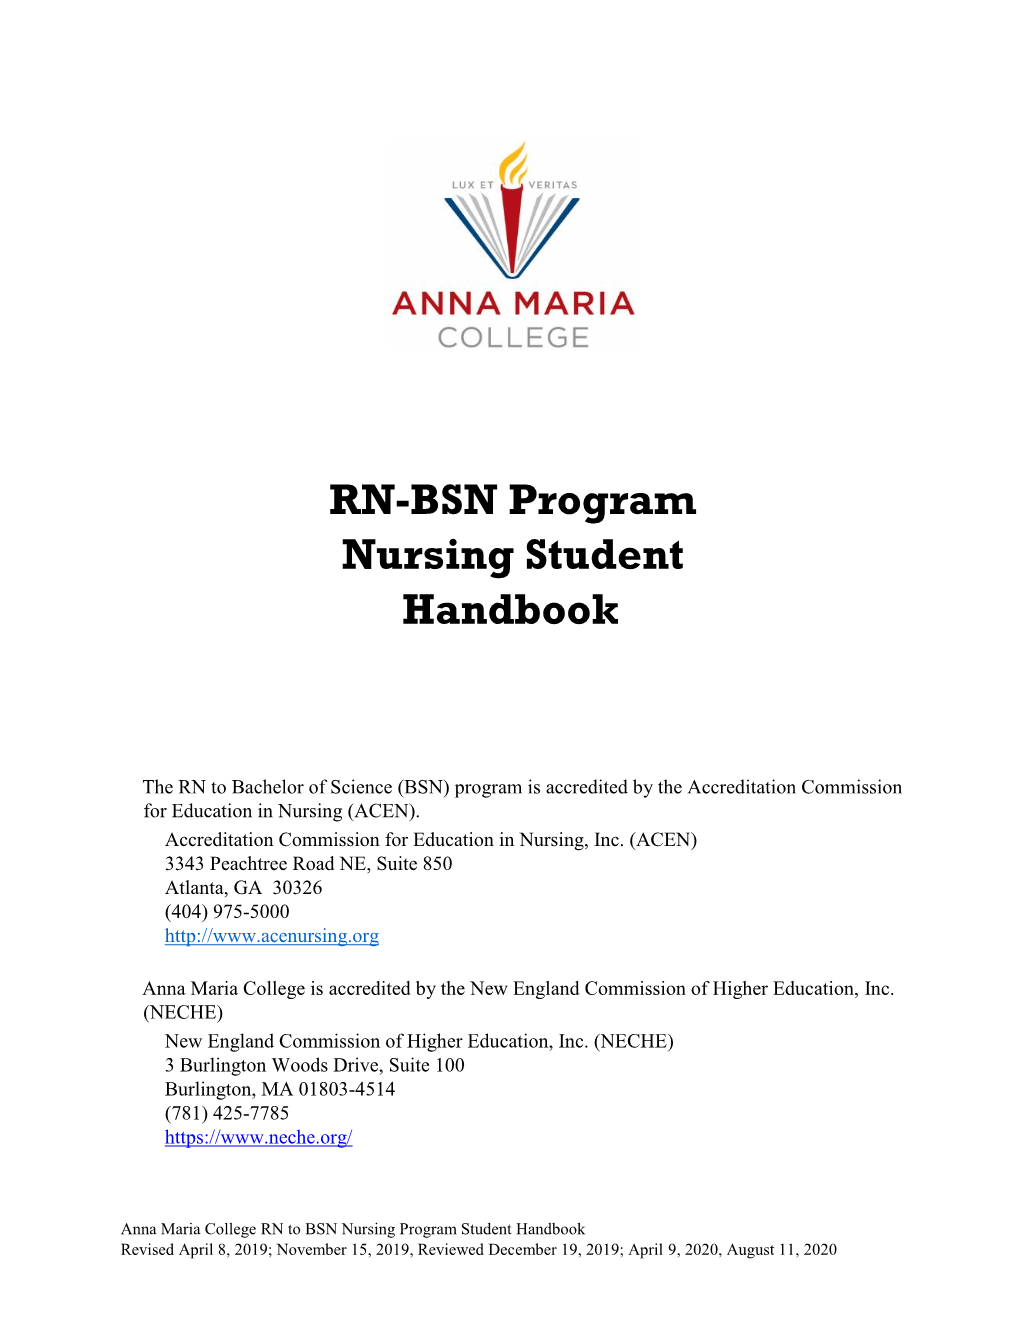 RN-BSN Program Nursing Student Handbook